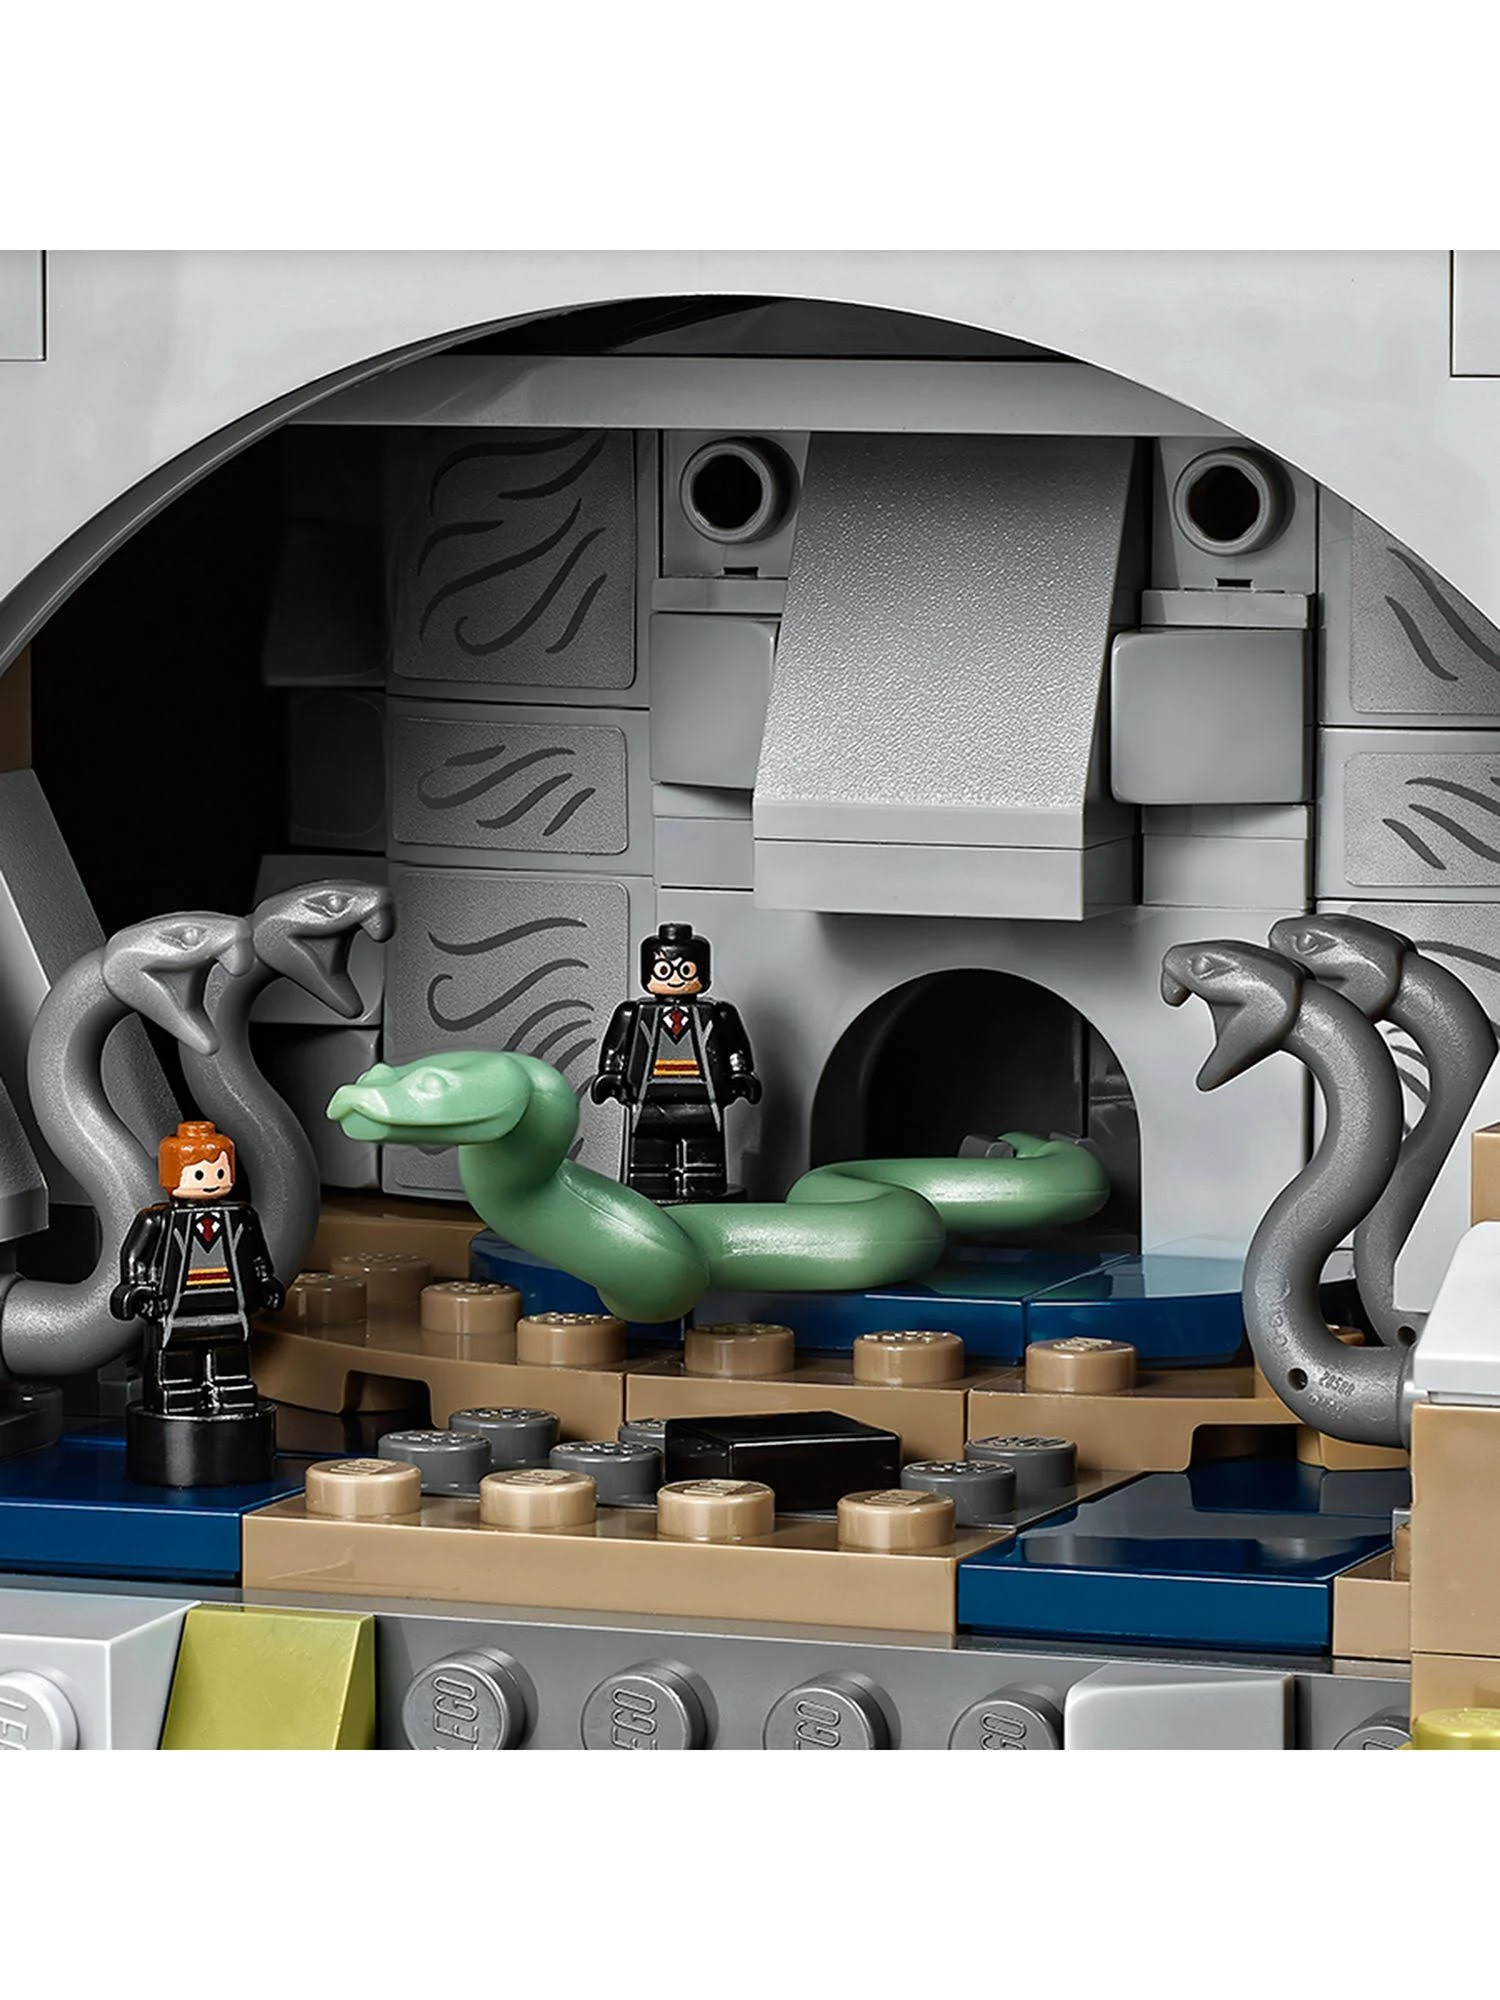 LEGO 71043 ¨C Harry Potter ¨C Hogwarts Castle